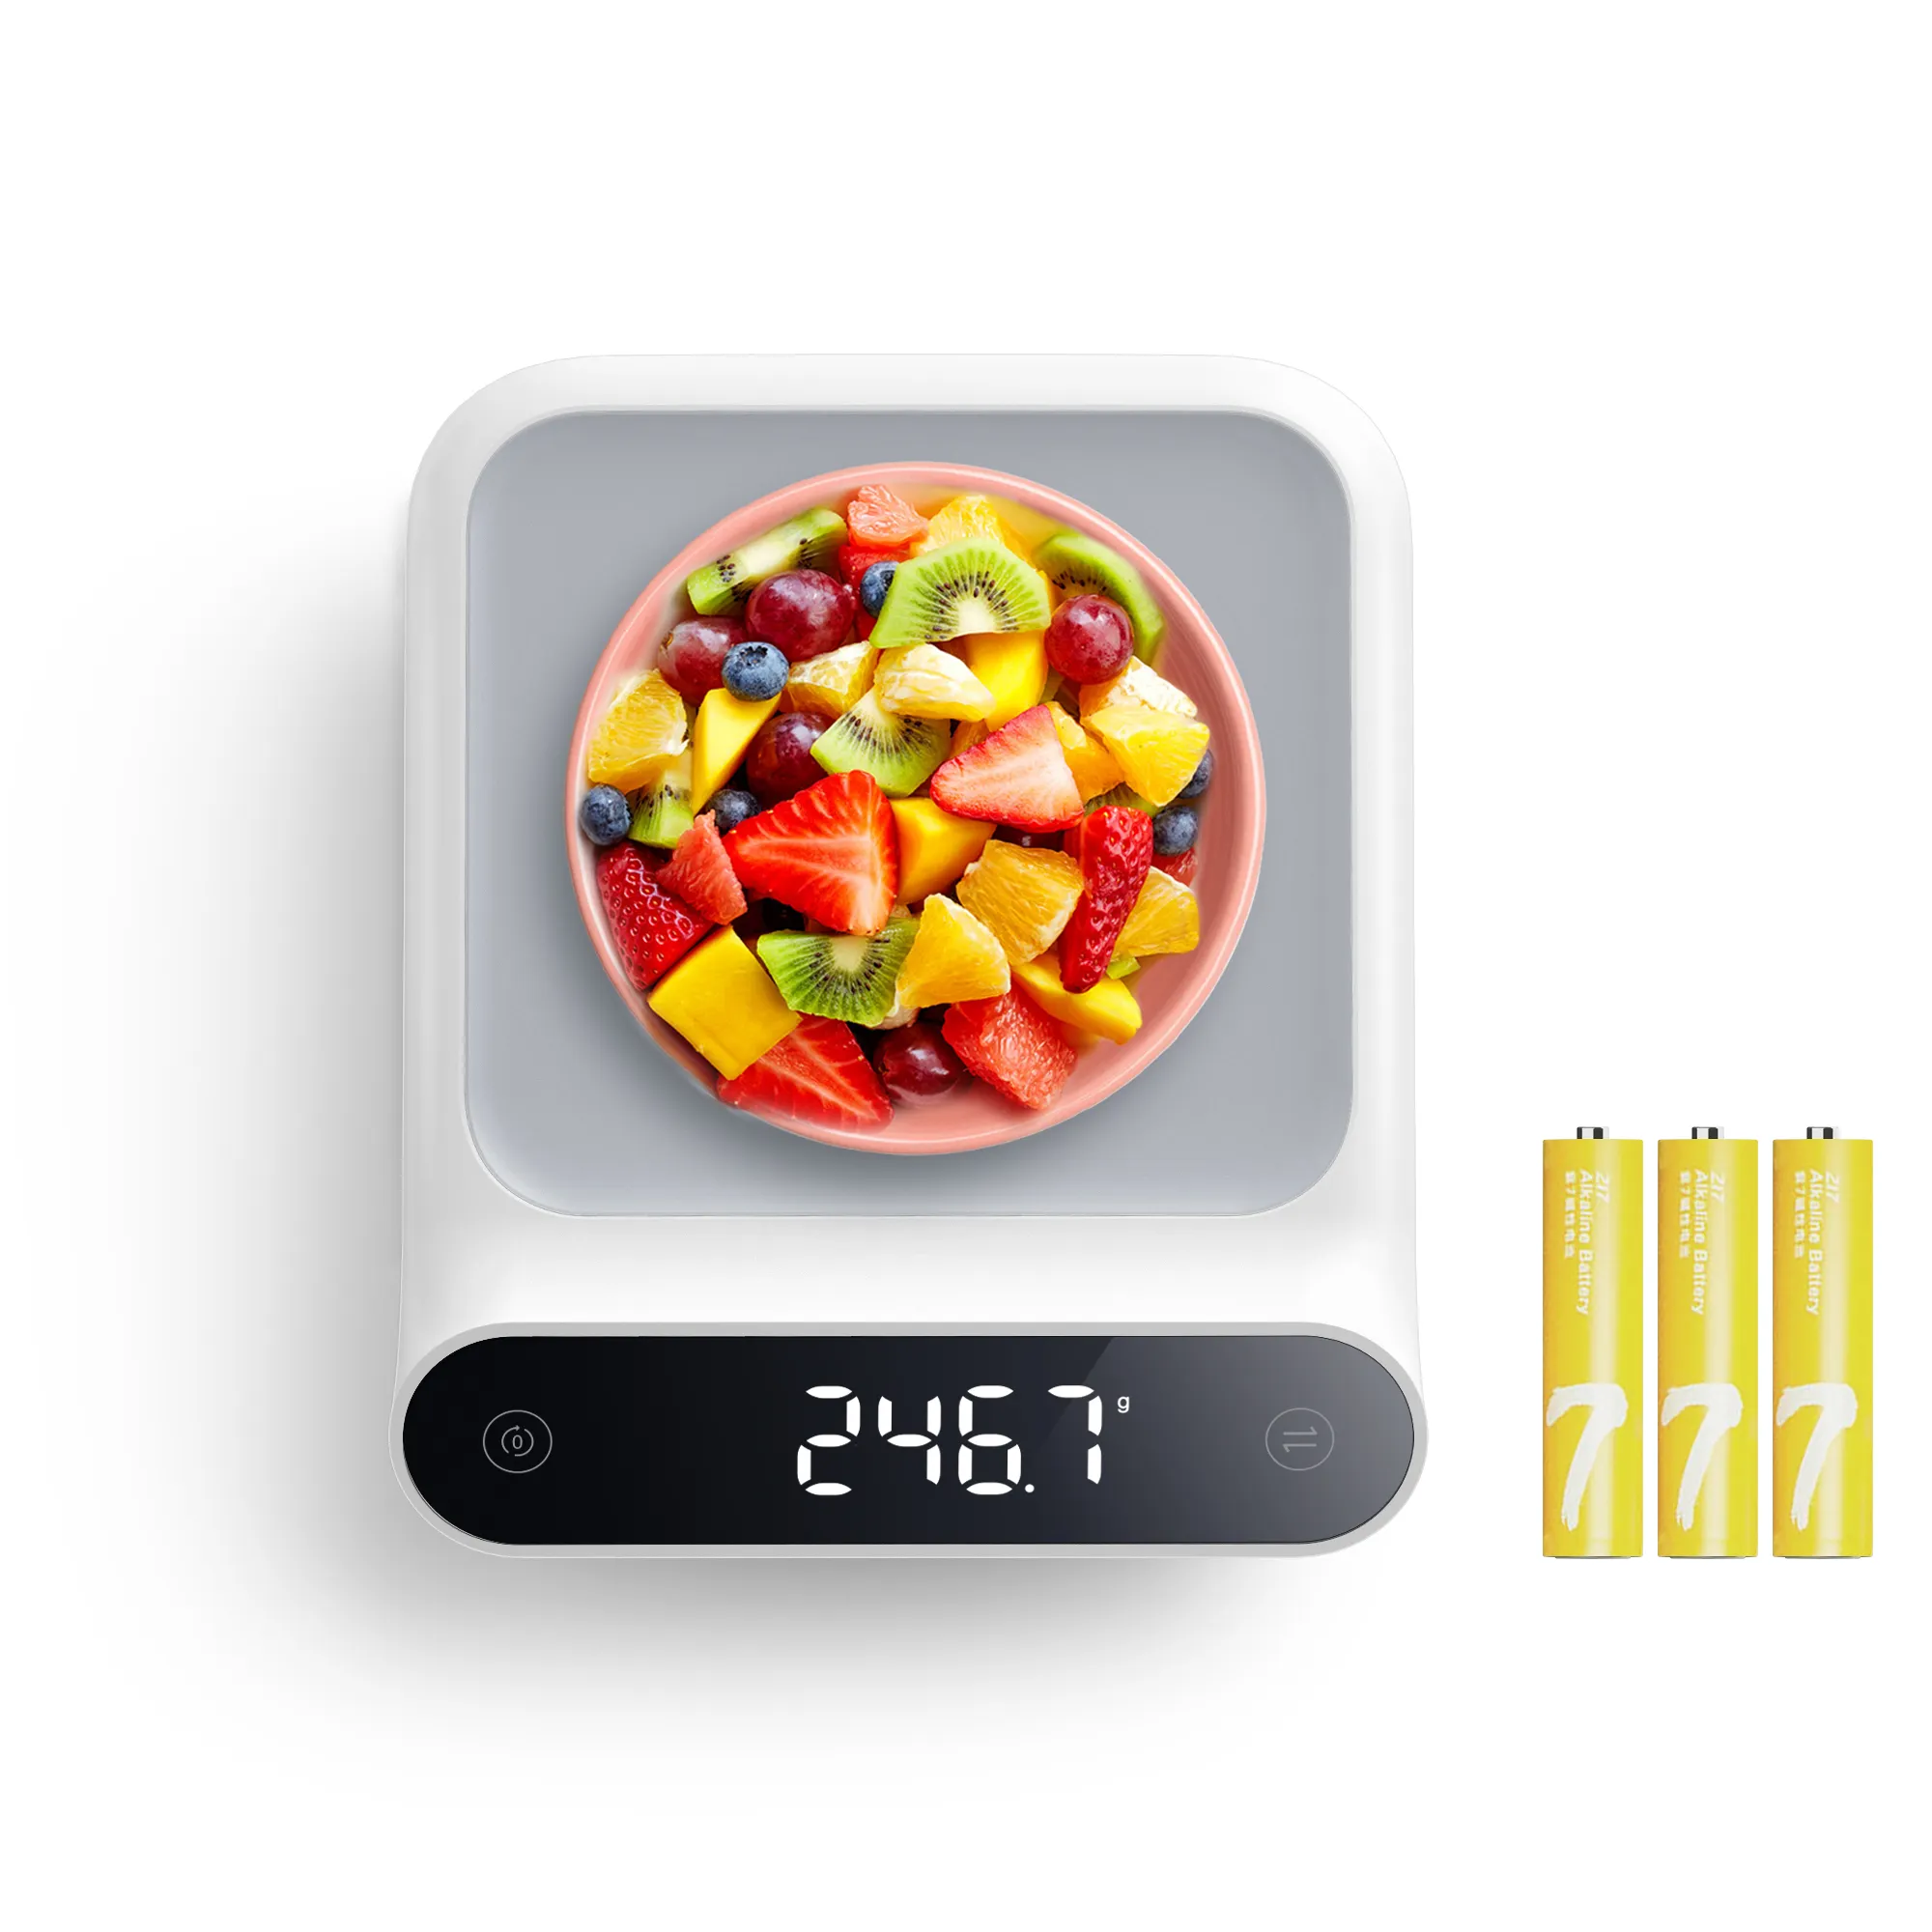 새로운 주방 도구 및 가제트 2021 가정용 5kg 전자 플랫폼 스케일 디지털 무게 식품 주방 규모